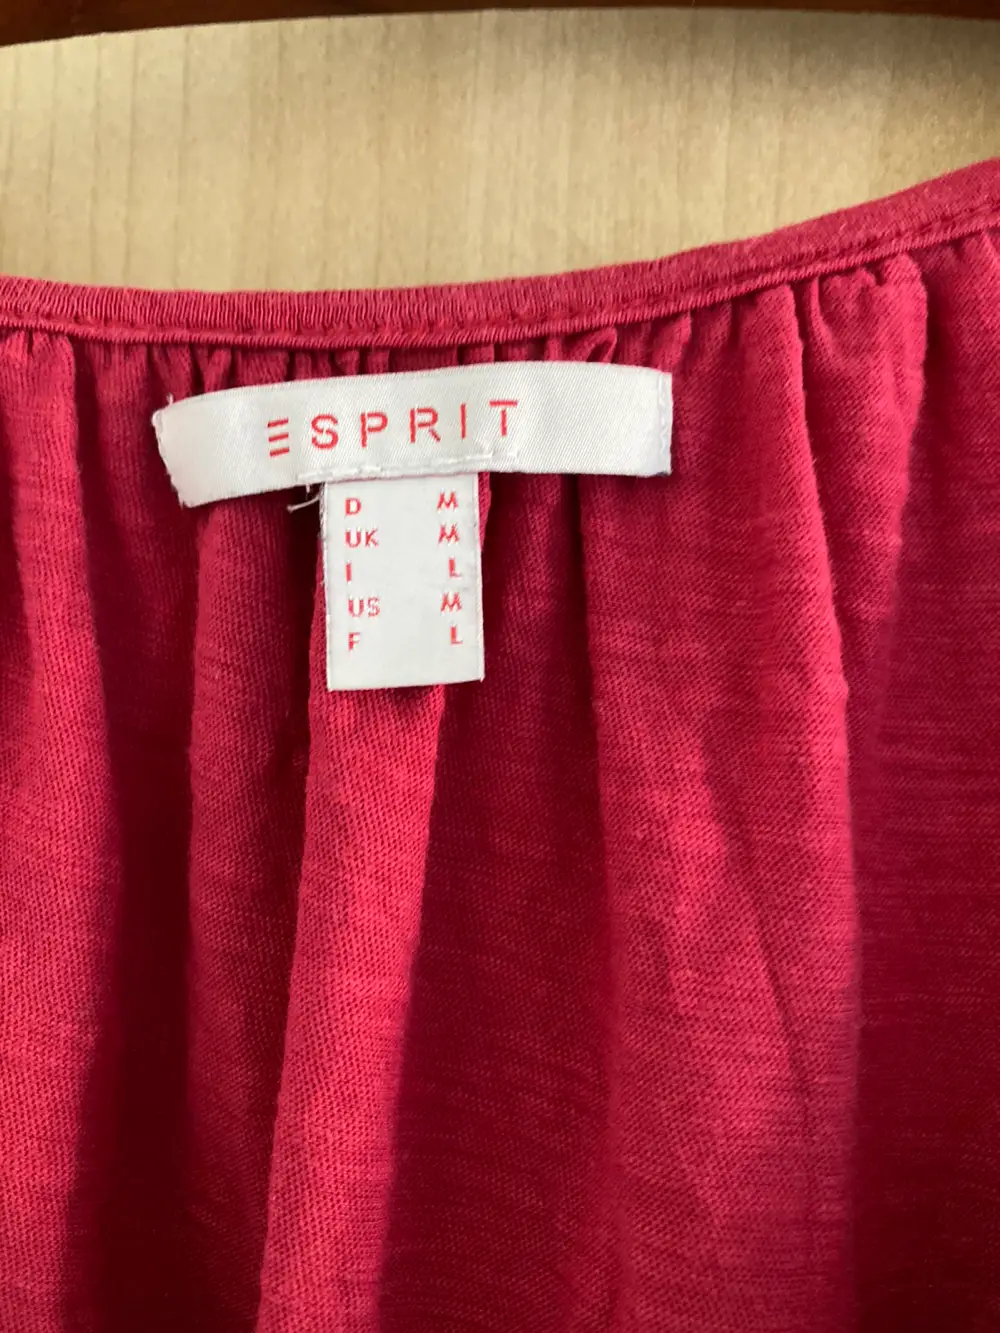 Normalisering konvertering grube Køb Esprit Ammekjole i størrelse M af Berit på Reshopper · Shop secondhand  til børn, mor og bolig